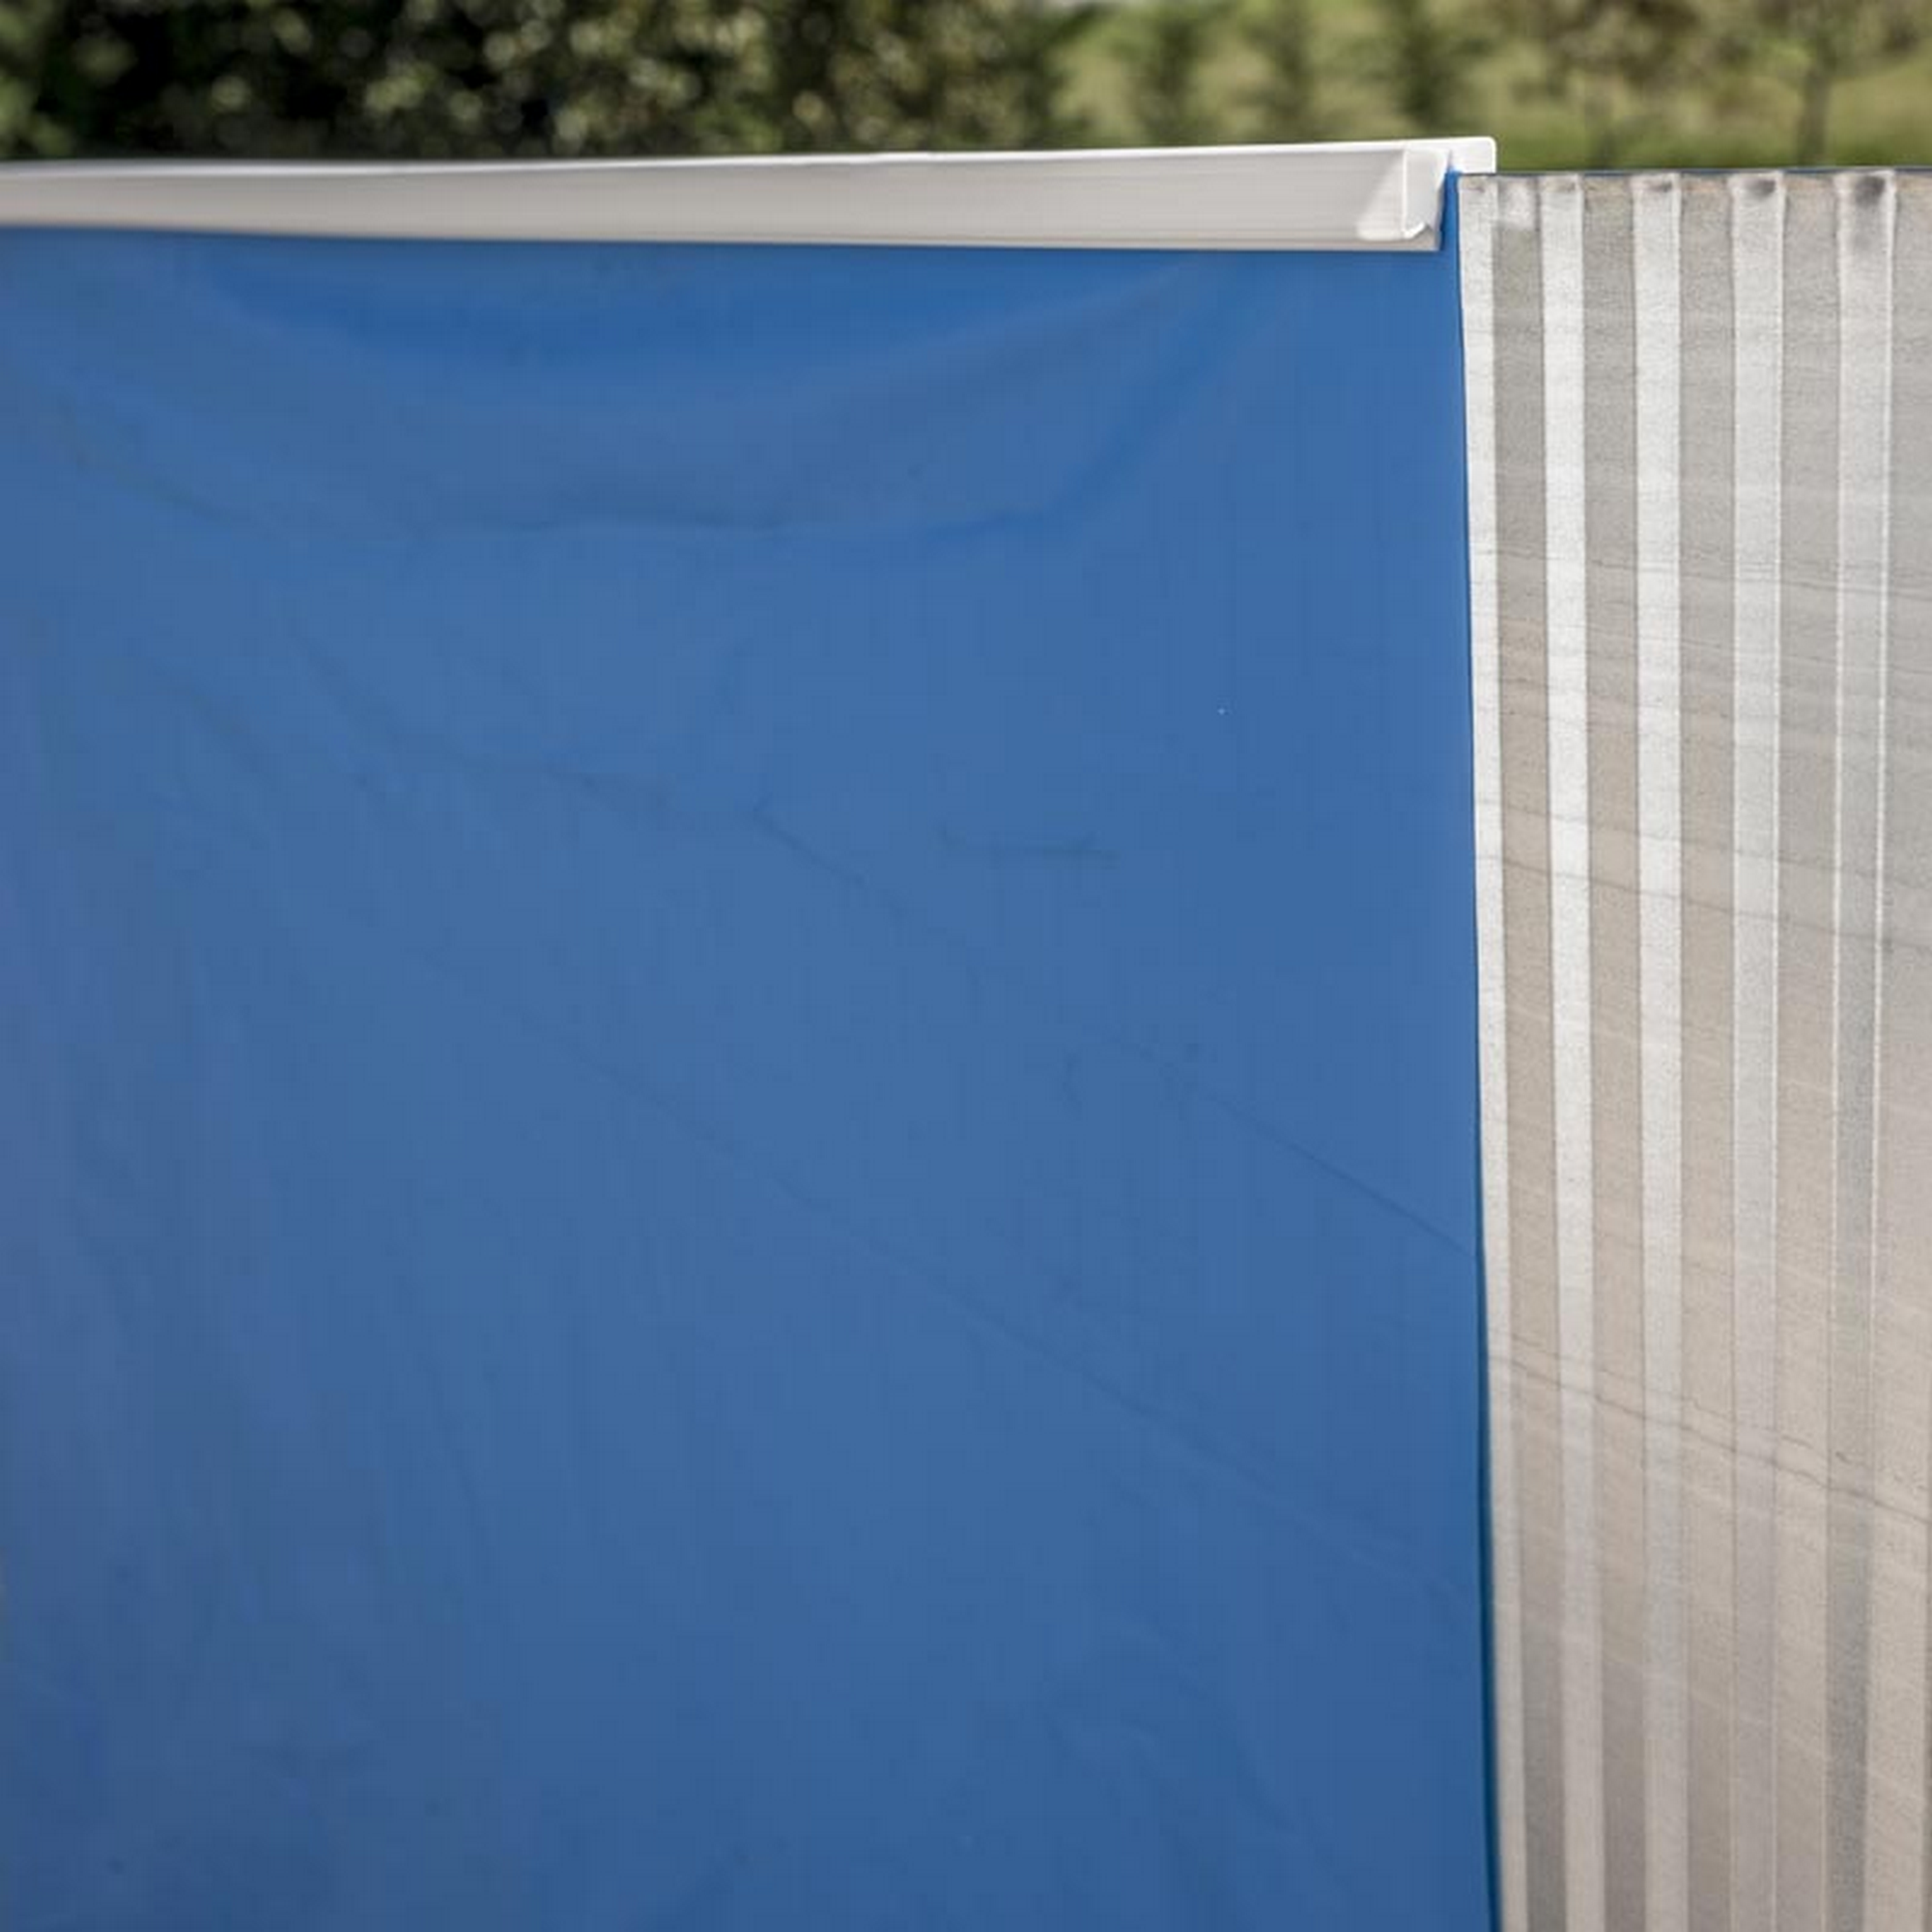 Einbaupool-Set 'Sumatra' blau/weiß rund Ø 350 x 150 cm + product picture